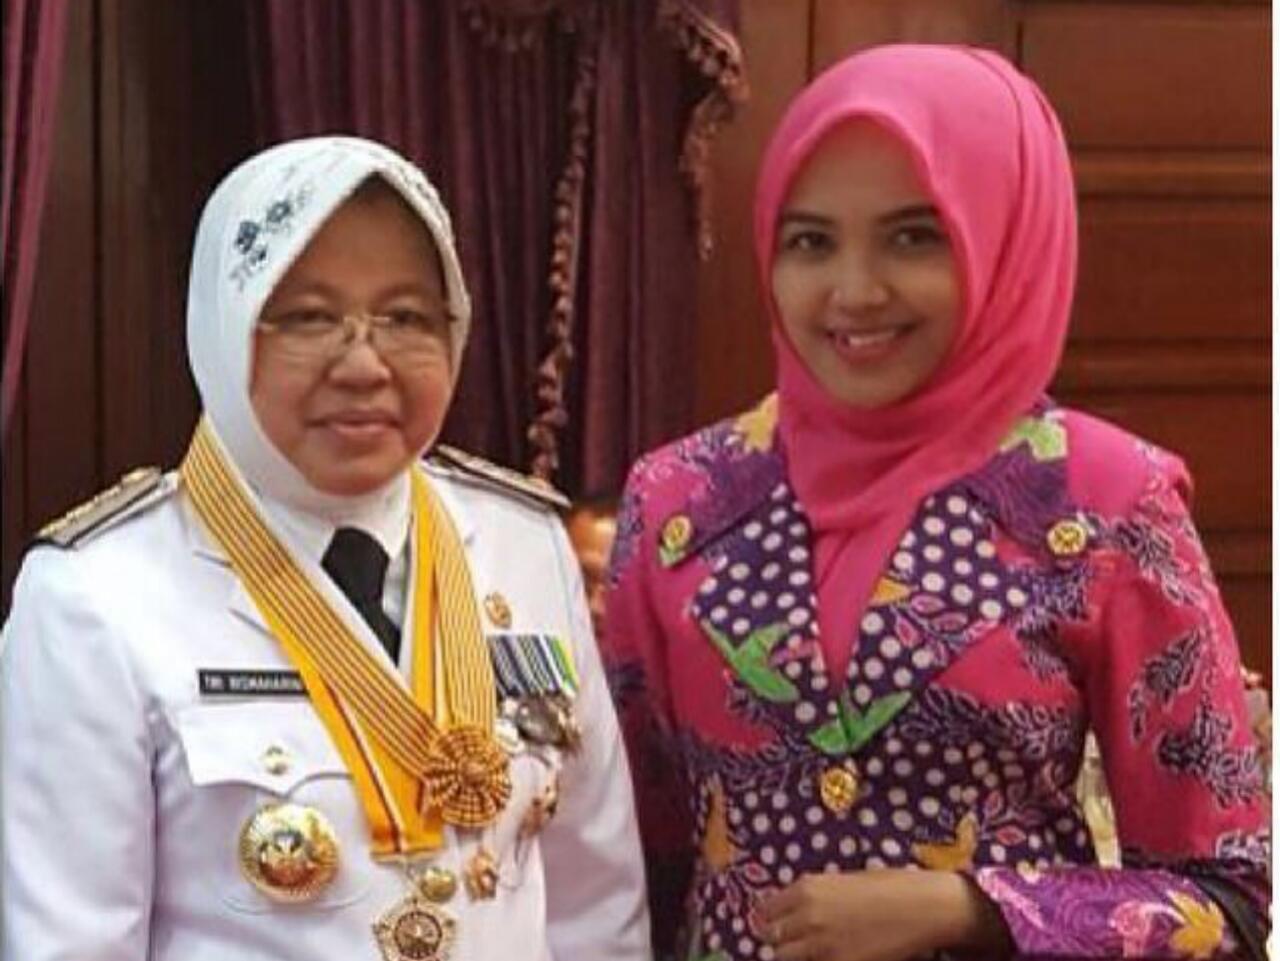 Dr. Ir. Tri Rismaharini, M.T. Walikota Surabaya, Wanita Tangguh yang Menginspirasi 